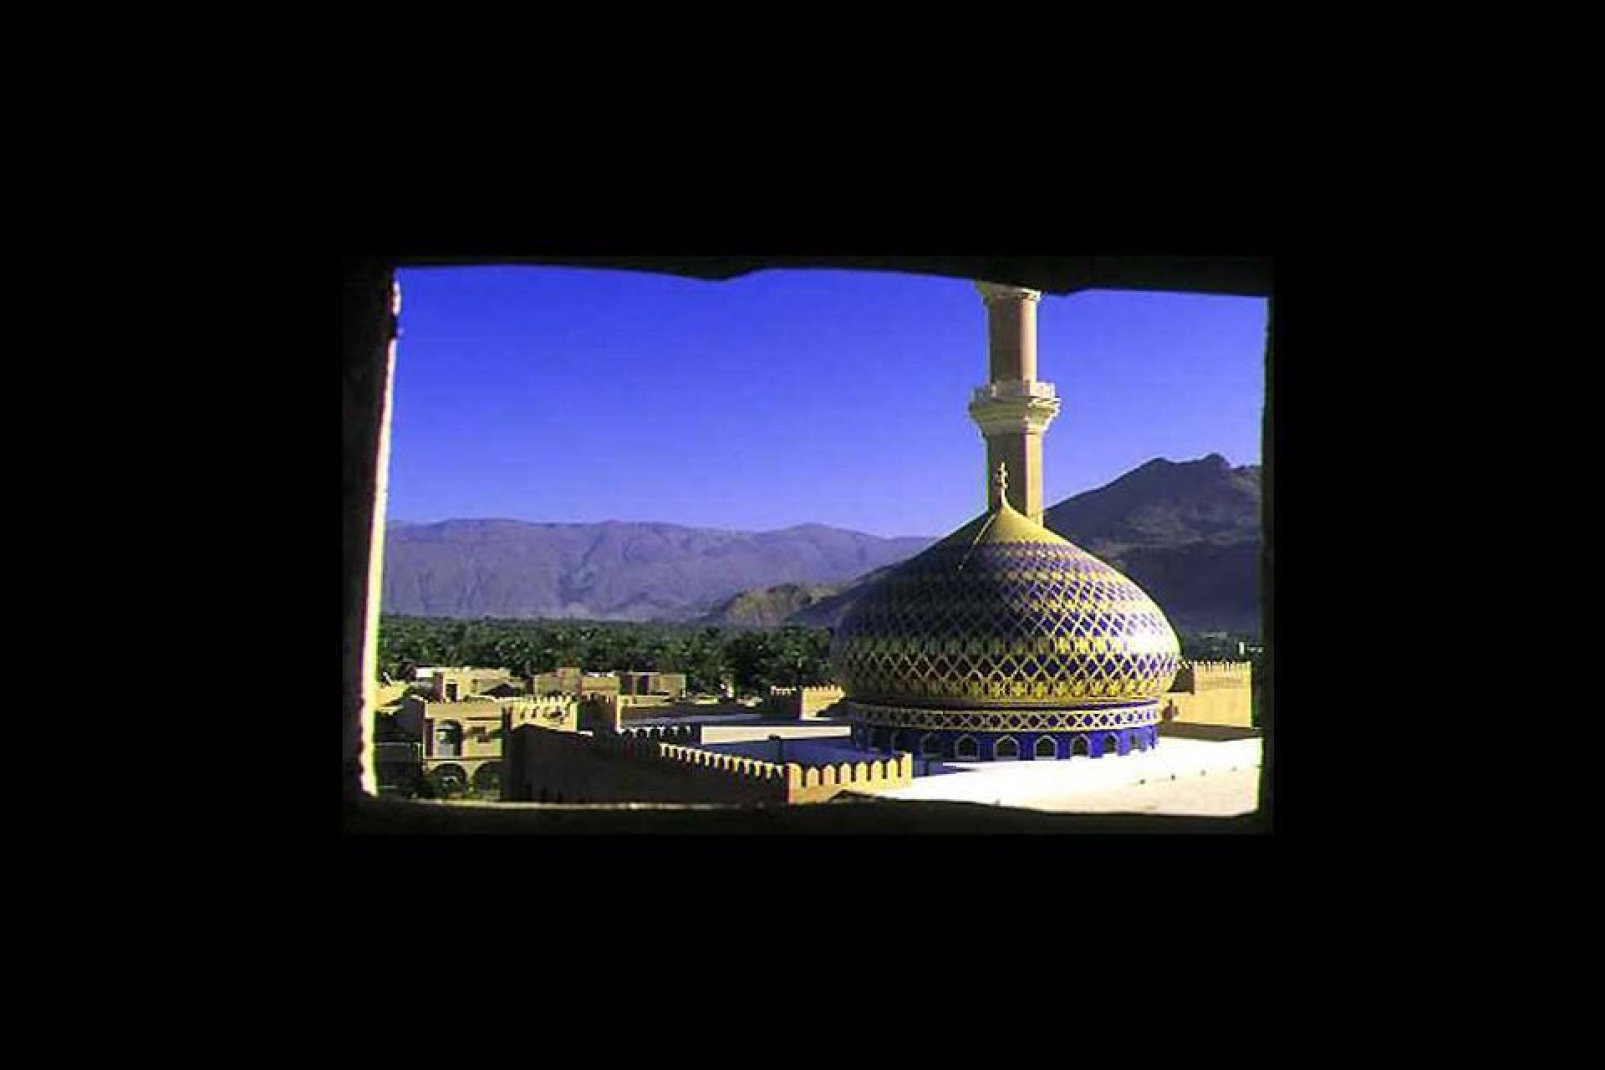 Du chemin de ronde du fort, la vue s'étend sur la région et les palmeraies, avec au premier plan, la coupole bleue de la mosquée.